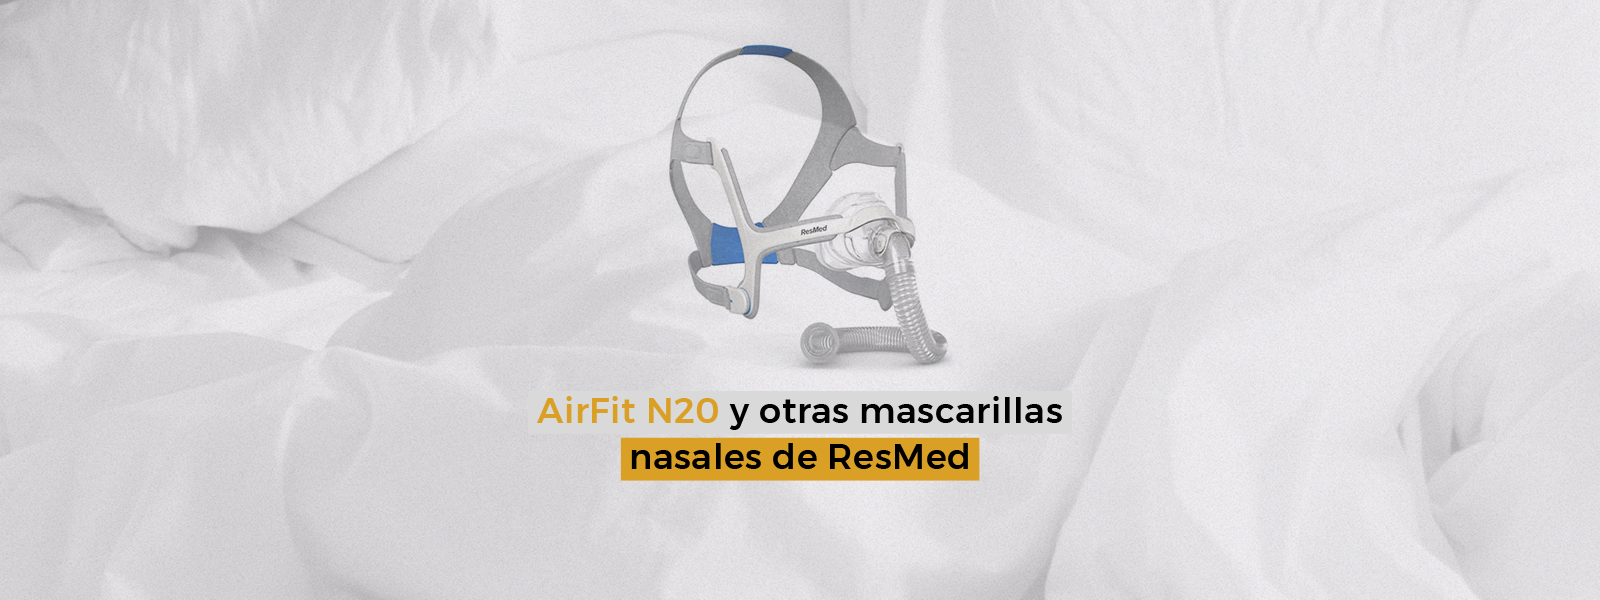 AirFit N20 y otras mascarillas nasales de ResMed